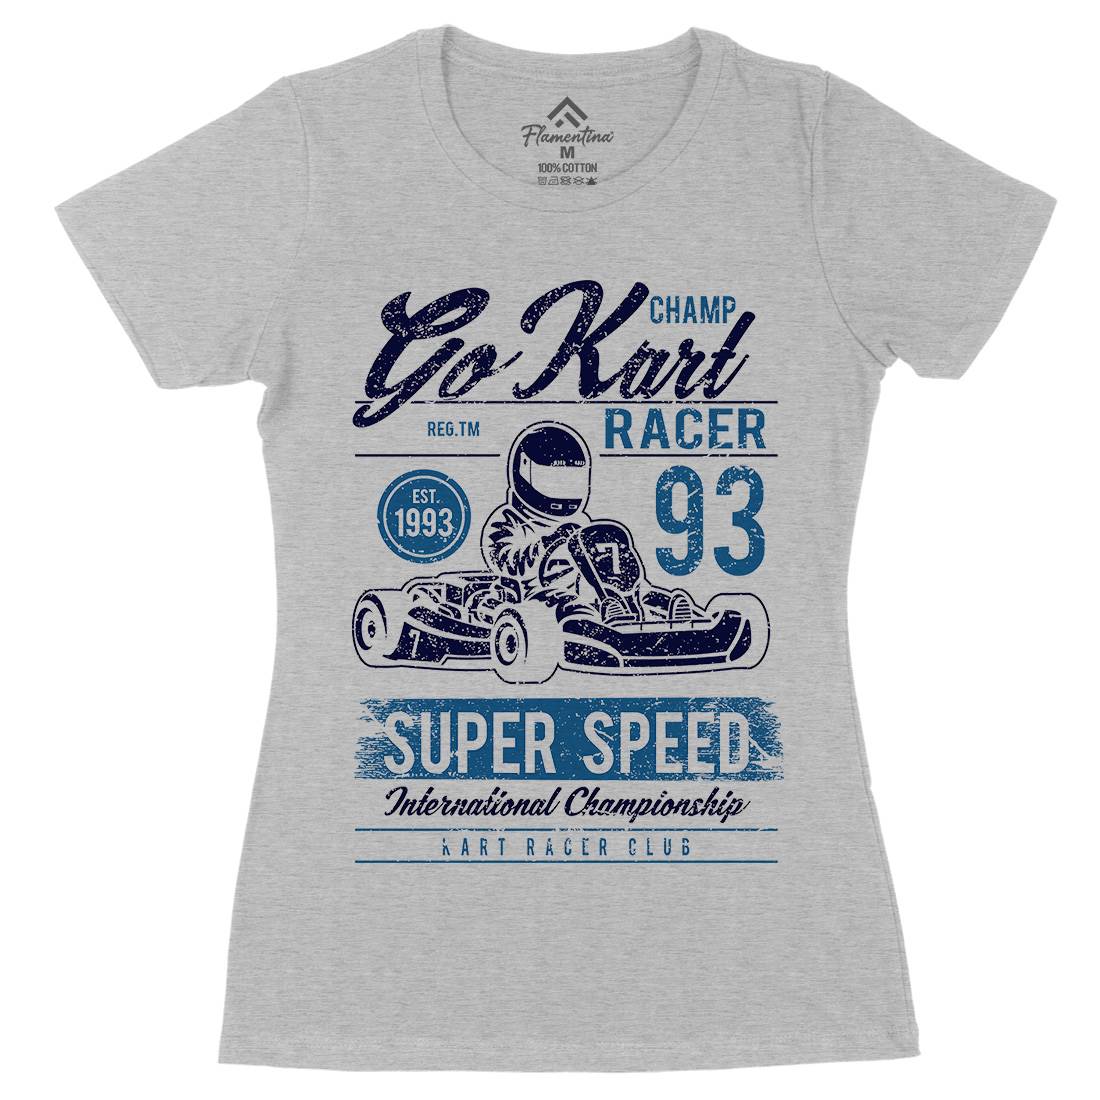 Go Kart Racer Womens Organic Crew Neck T-Shirt Cars A058